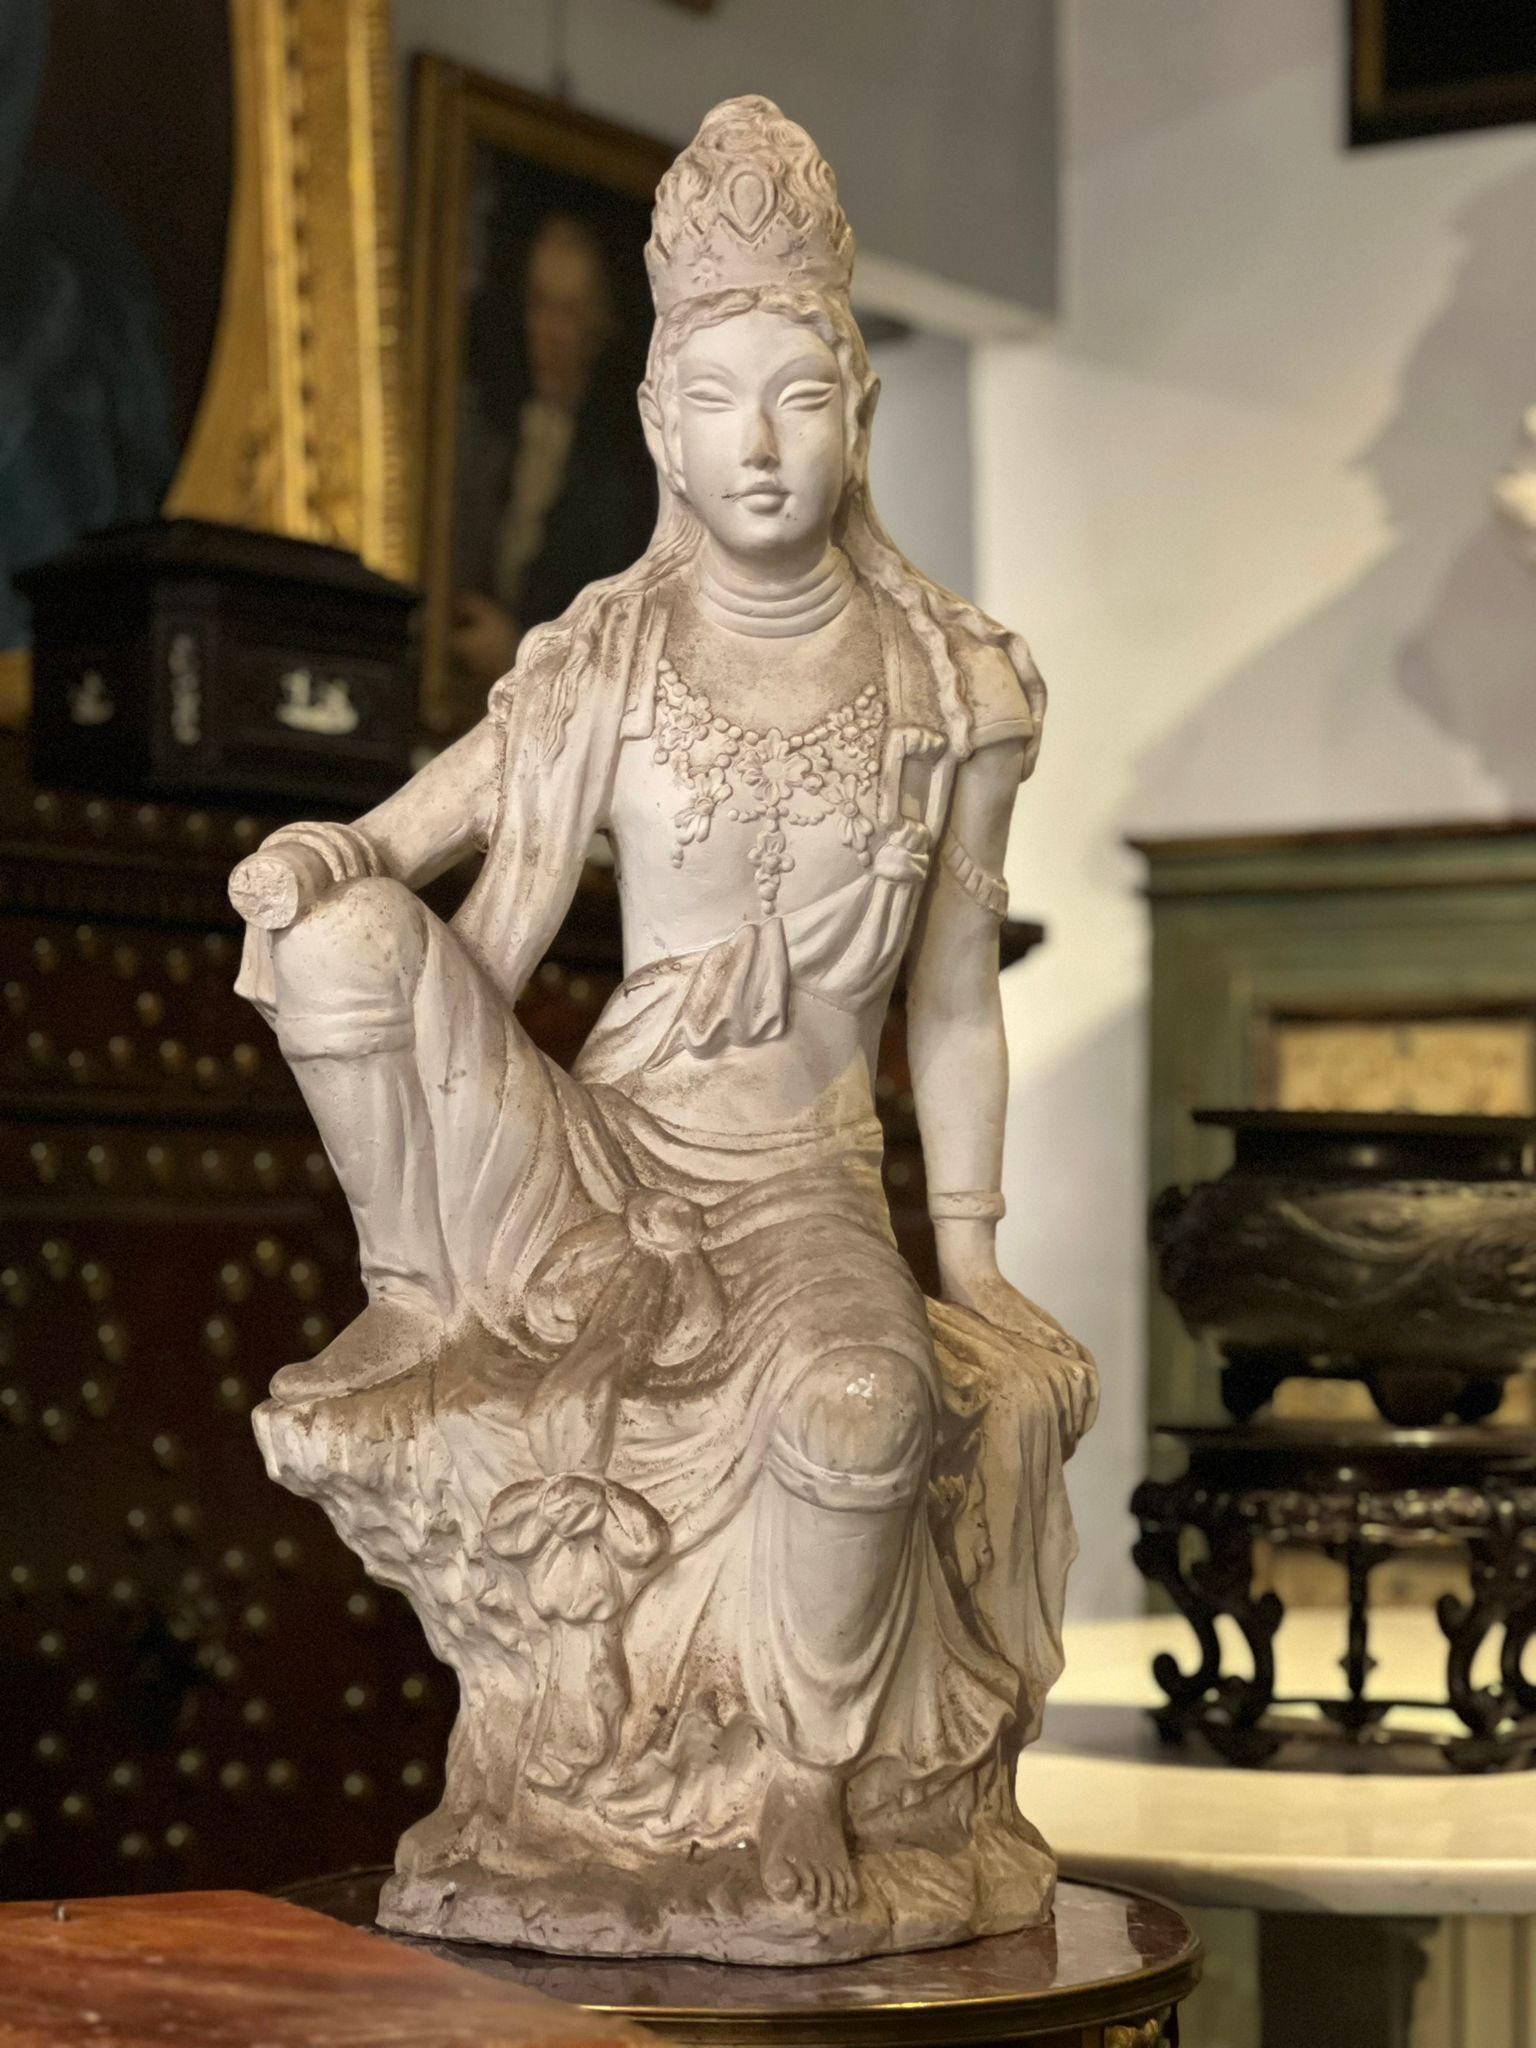 Schöne weiße Terrakotta-Skulptur, die eine orientalische Göttin darstellt. Äußerst raffinierte Draperien, Gewänder und Kopfbedeckungen, Toskana, Anfang 20. Jahrhundert.

- Die Hand der Skulptur muss neu geklebt werden.